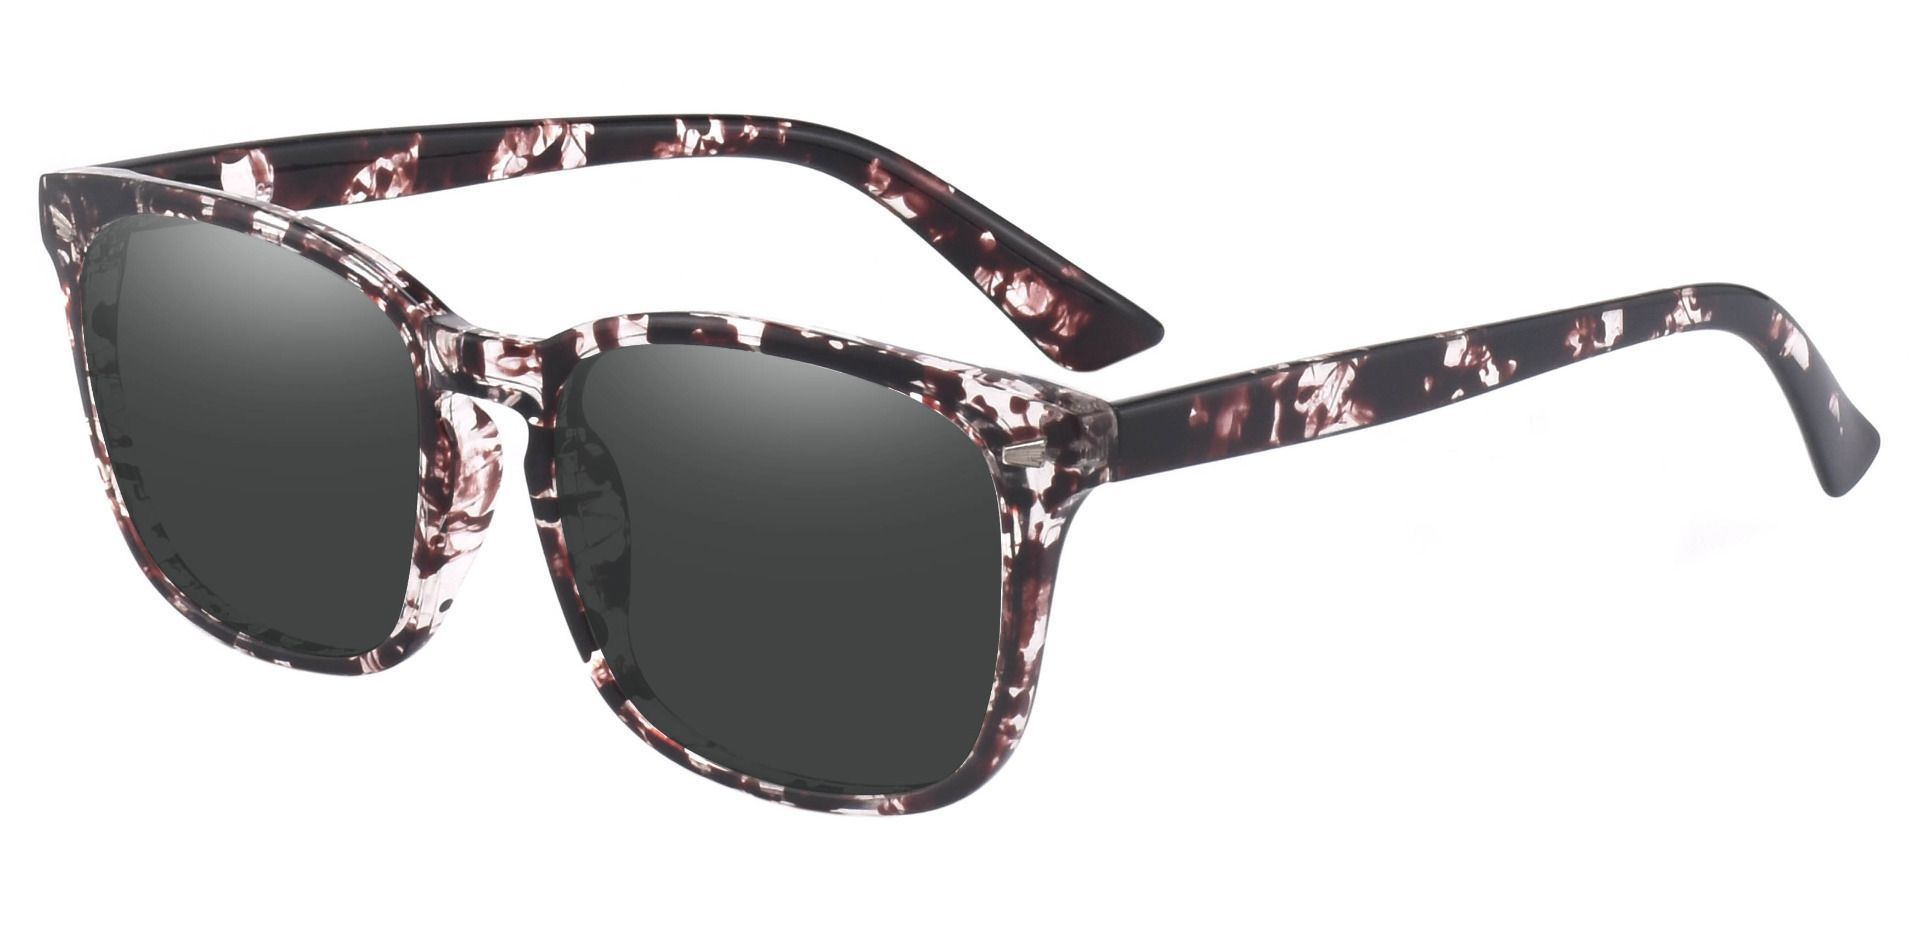 Zen Square Prescription Sunglasses - Multi Color Frame With Gray Lenses